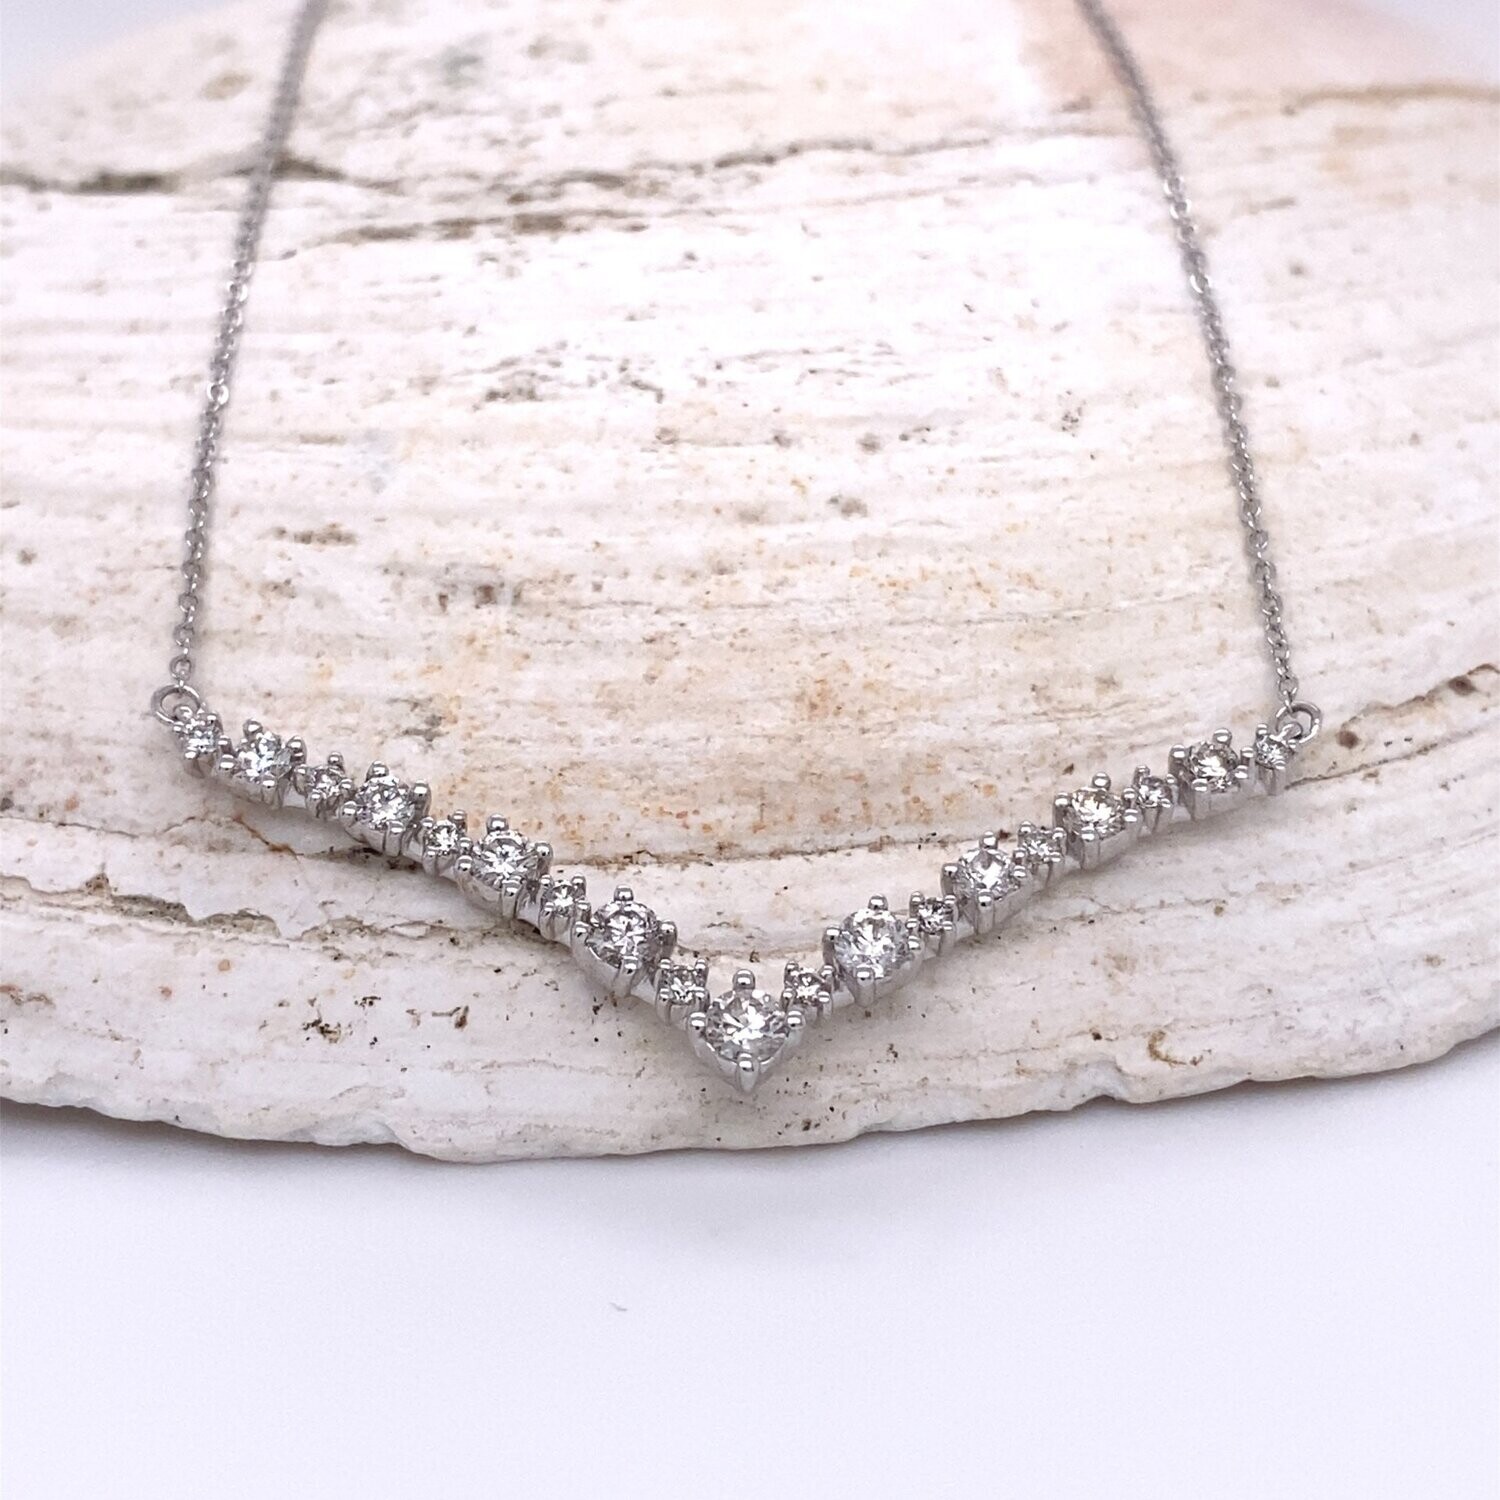 Diamond V Curved Necklace